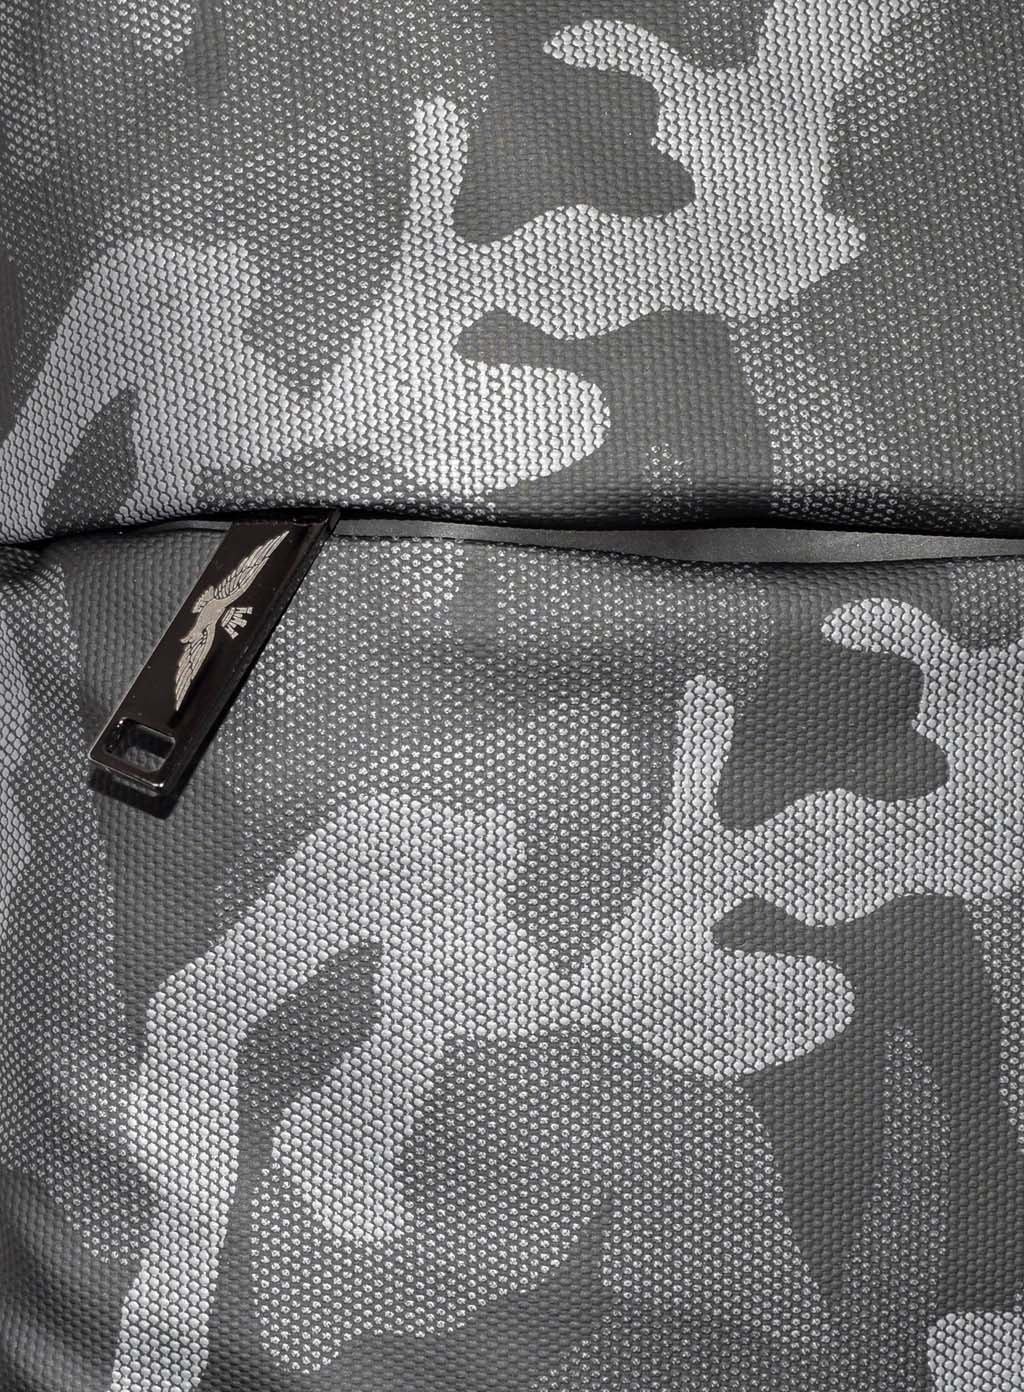 Рюкзак AERONAUTICA MILITARE BACK PACK FW 21/22/CN camouflage nero (ZBAM 363) 